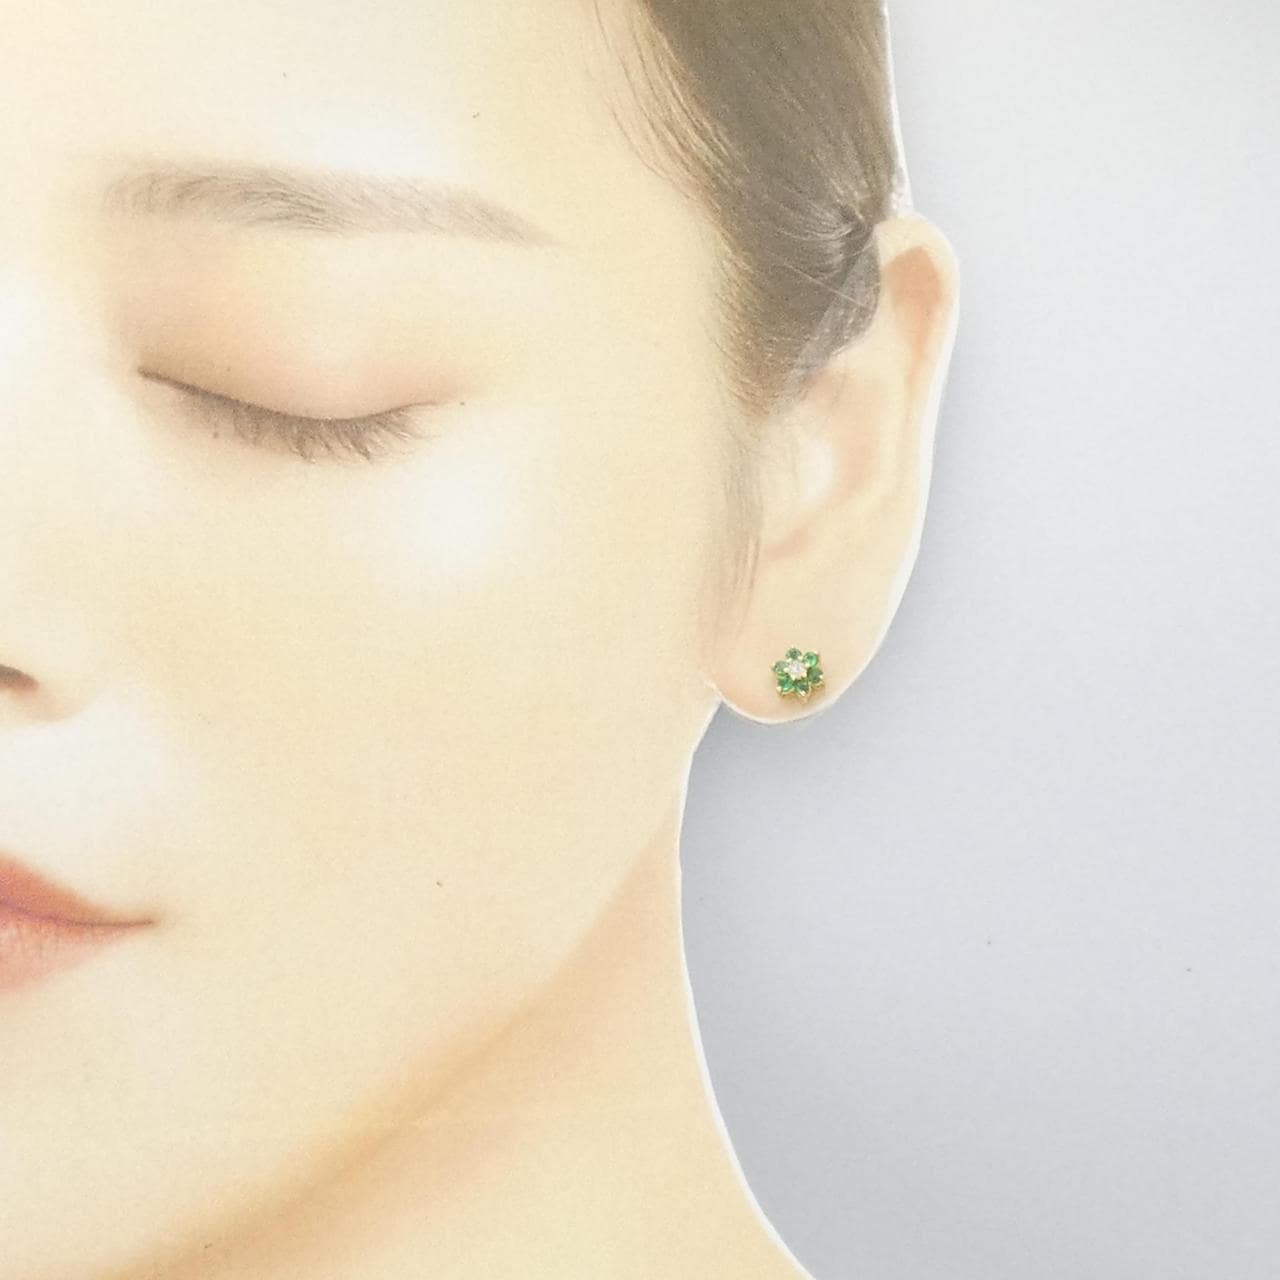 750YG/K18YG Flower Emerald Earrings